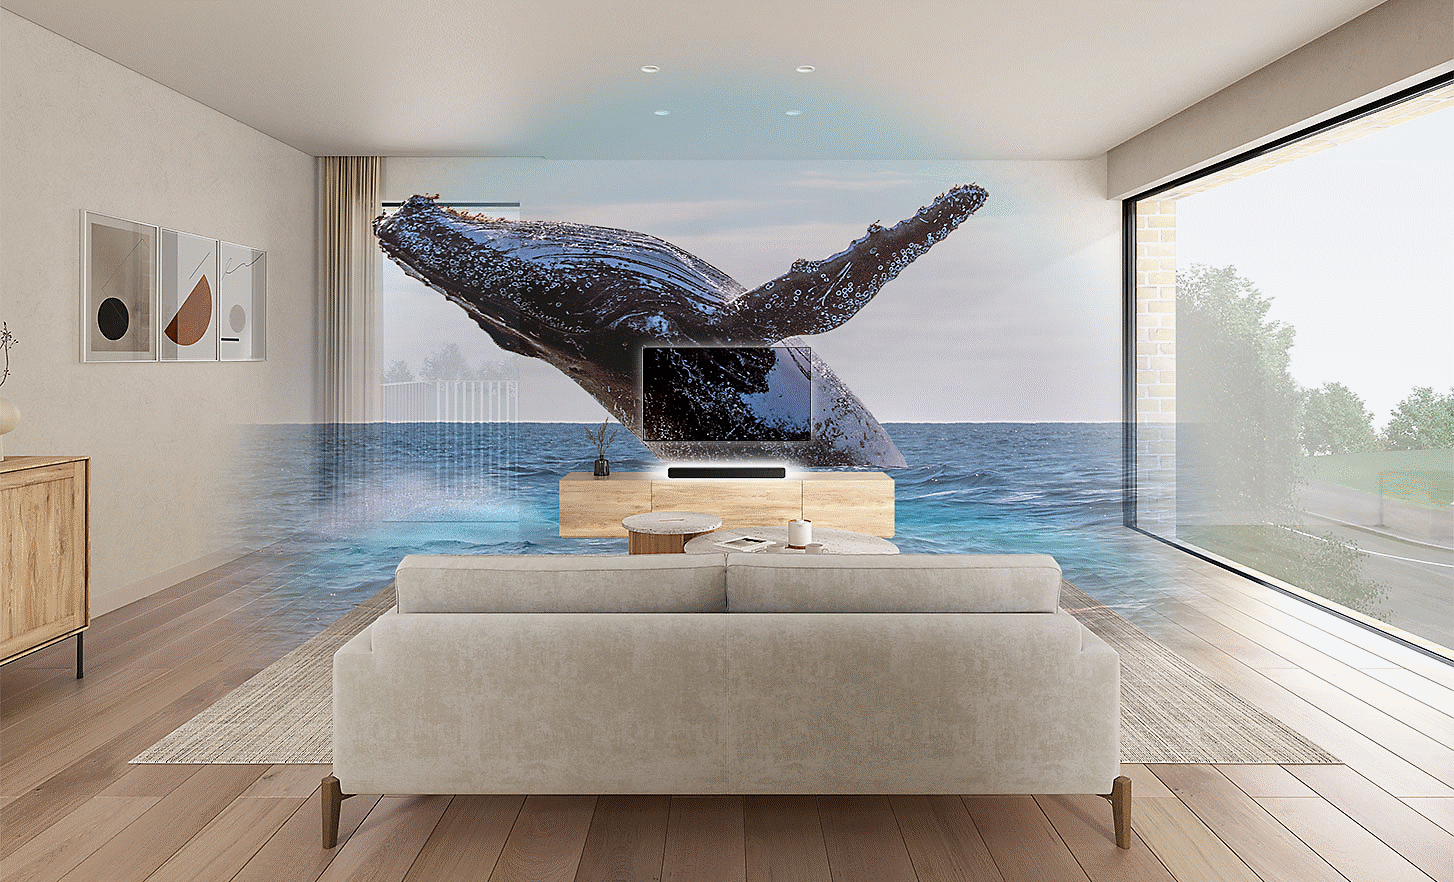 Imagen de una sala de estar con un TV y una barra de sonido HT-S2000 en el centro, una imagen con marca de agua de una ballena encima